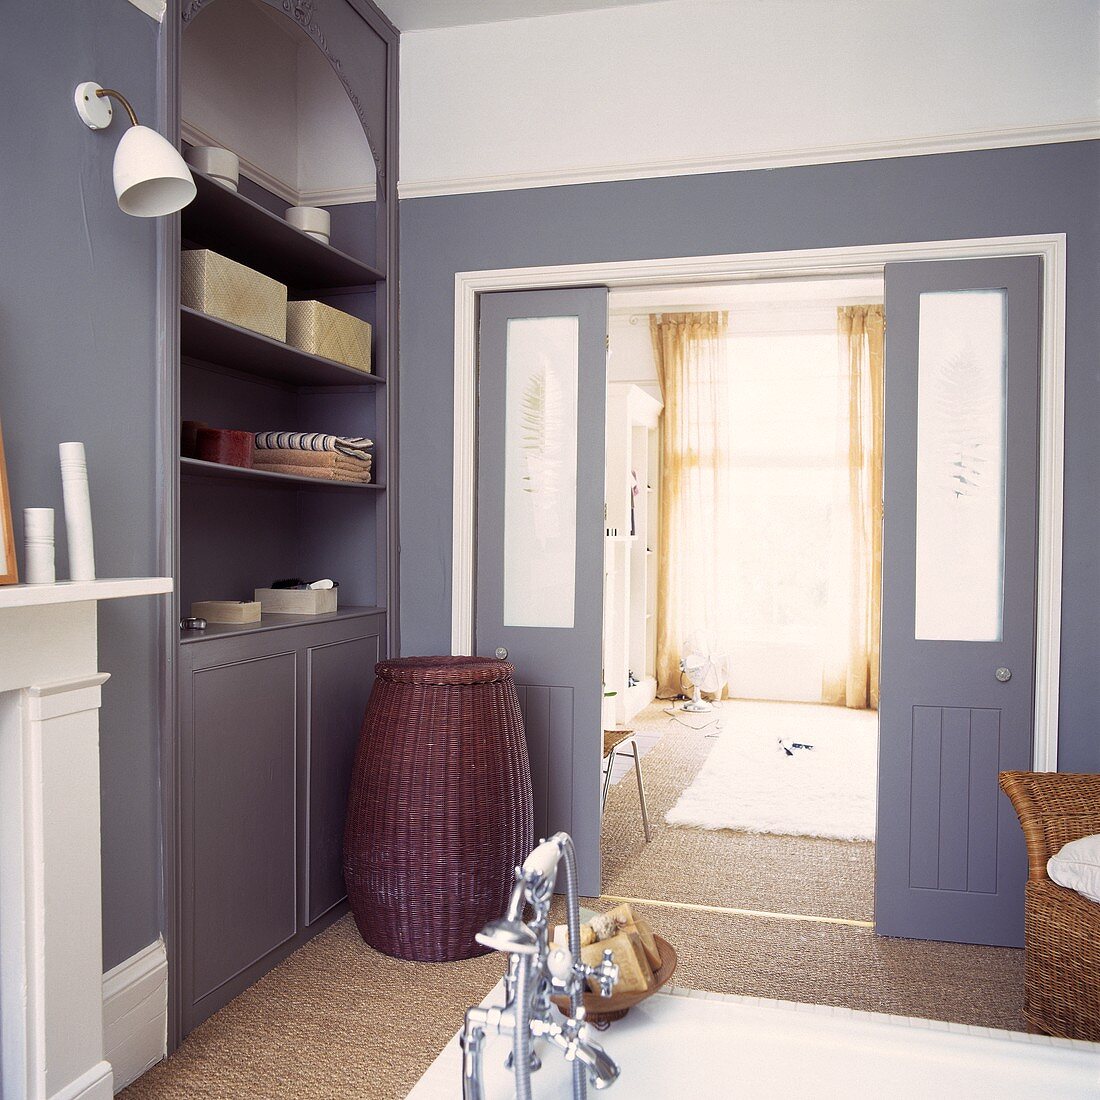 Ein Badezimmer mit grauen Einheiten und Schiebetüren zum Schlafzimmer